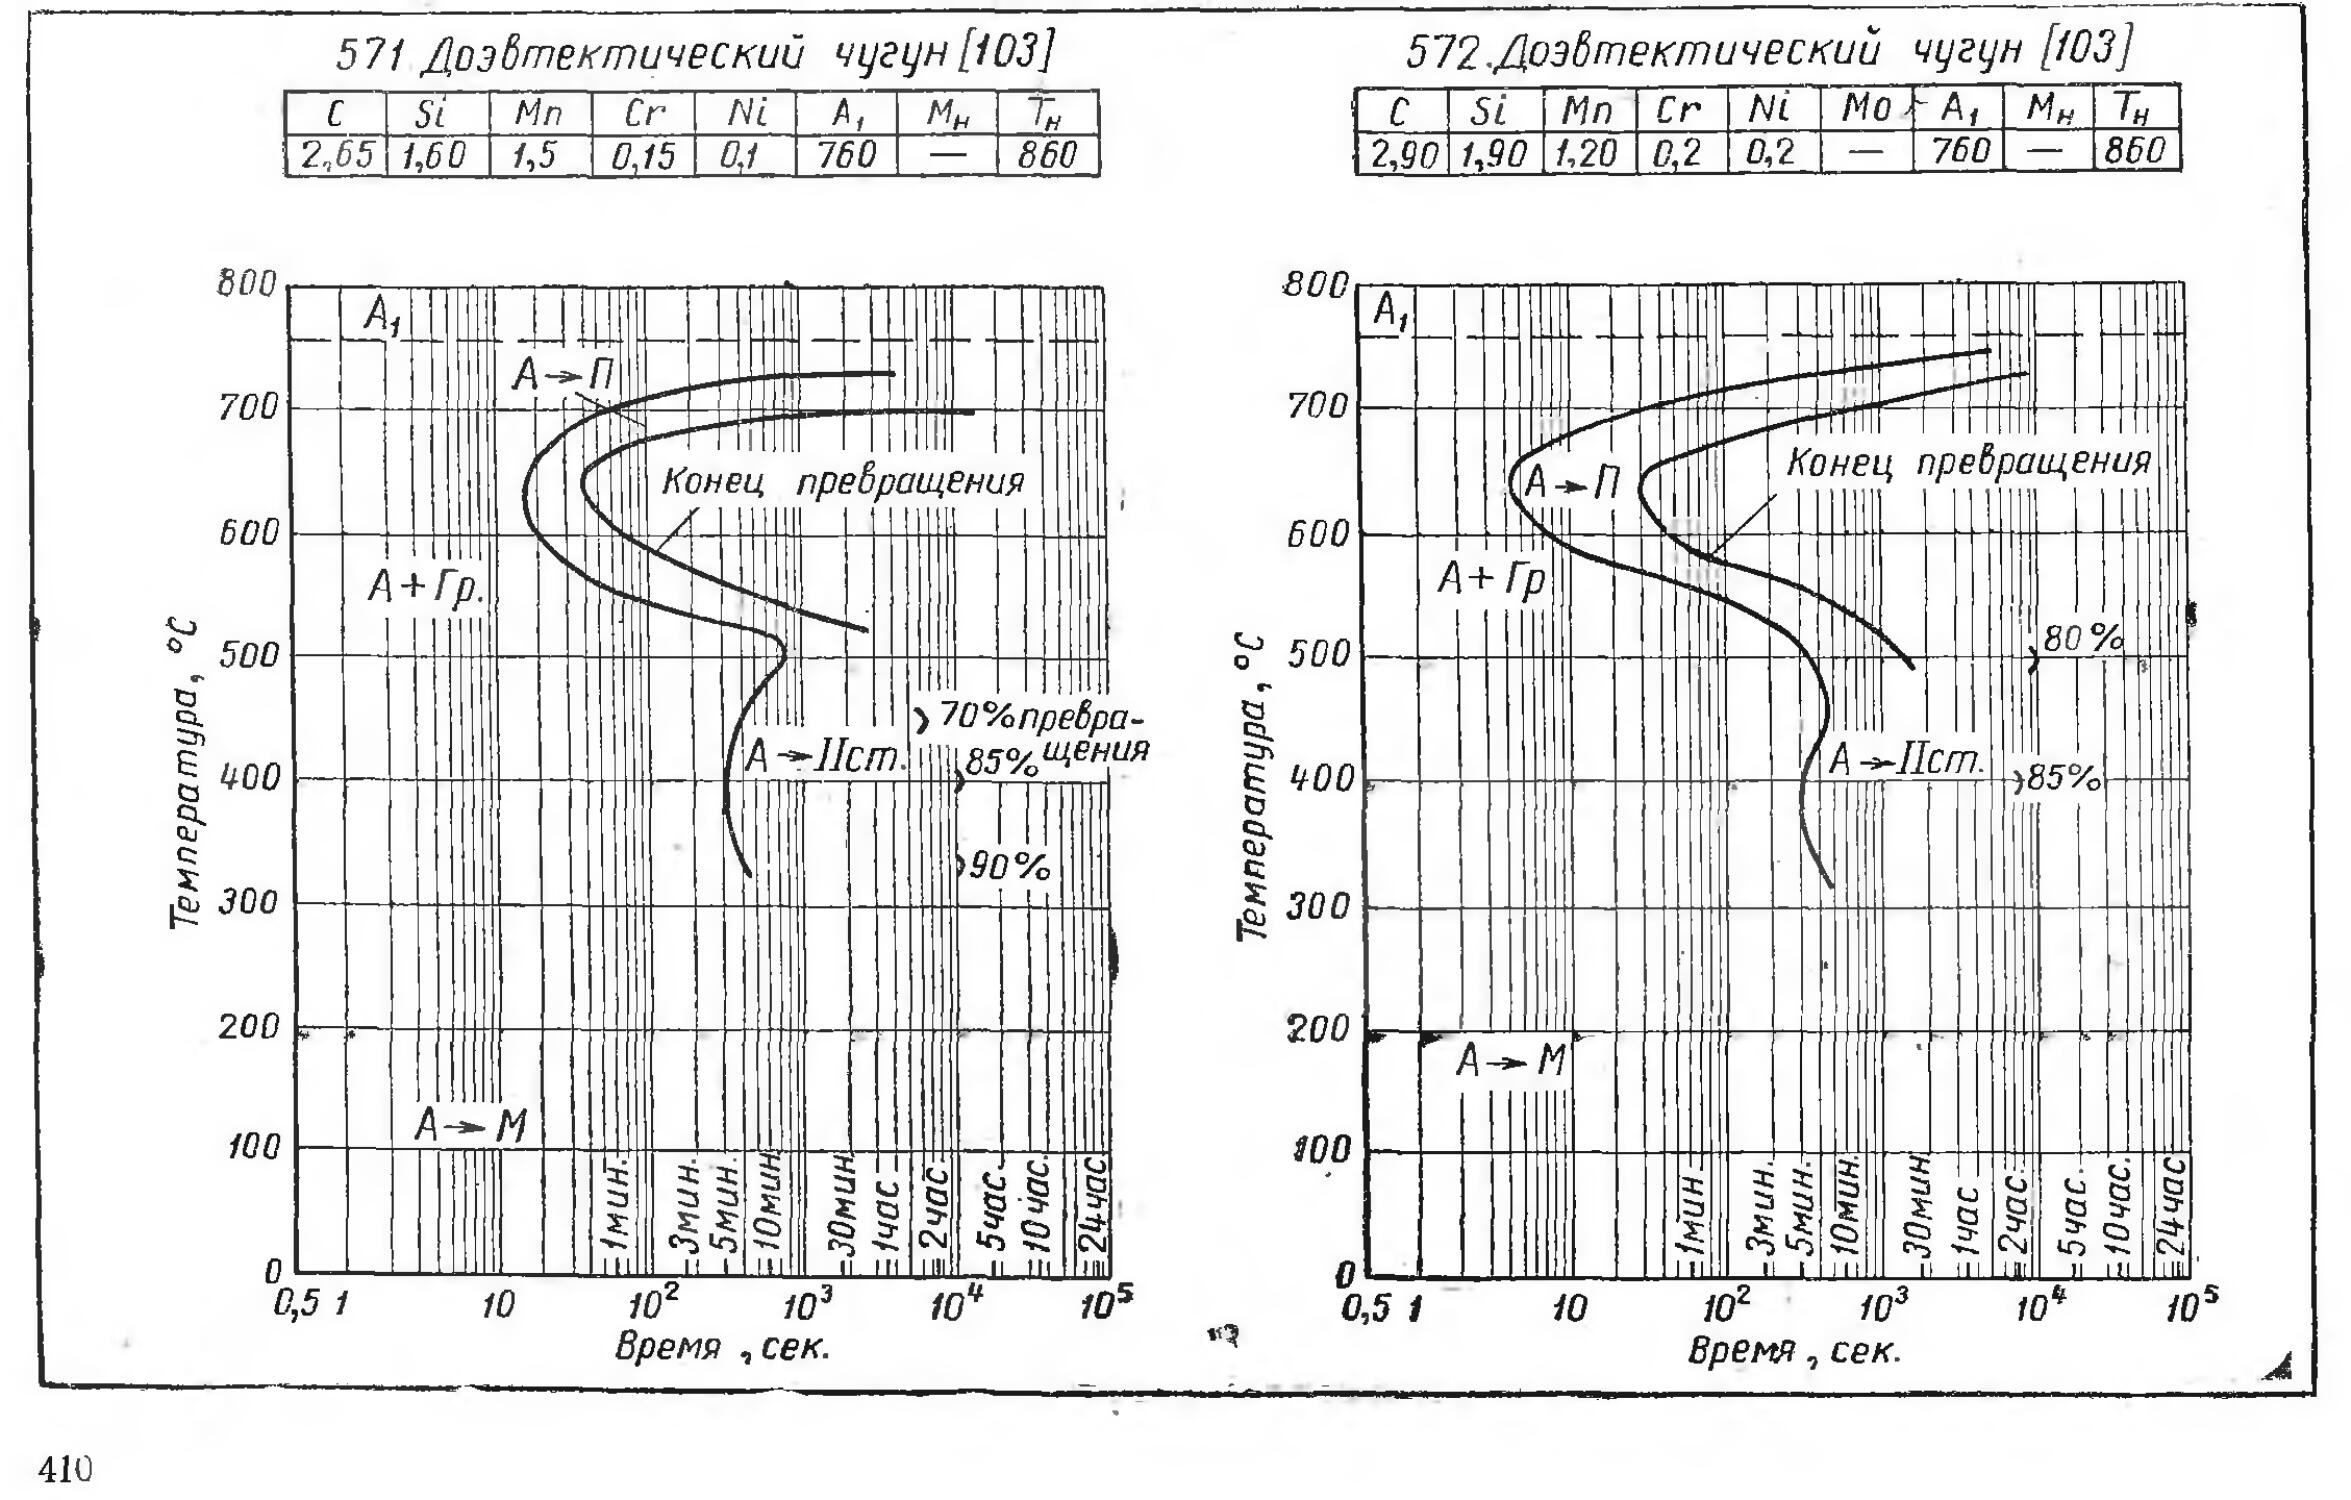 Графики справочник. Диаграмма изотермического распада переохлажденного аустенита. Термокинетическая диаграмма 12х18н10т.